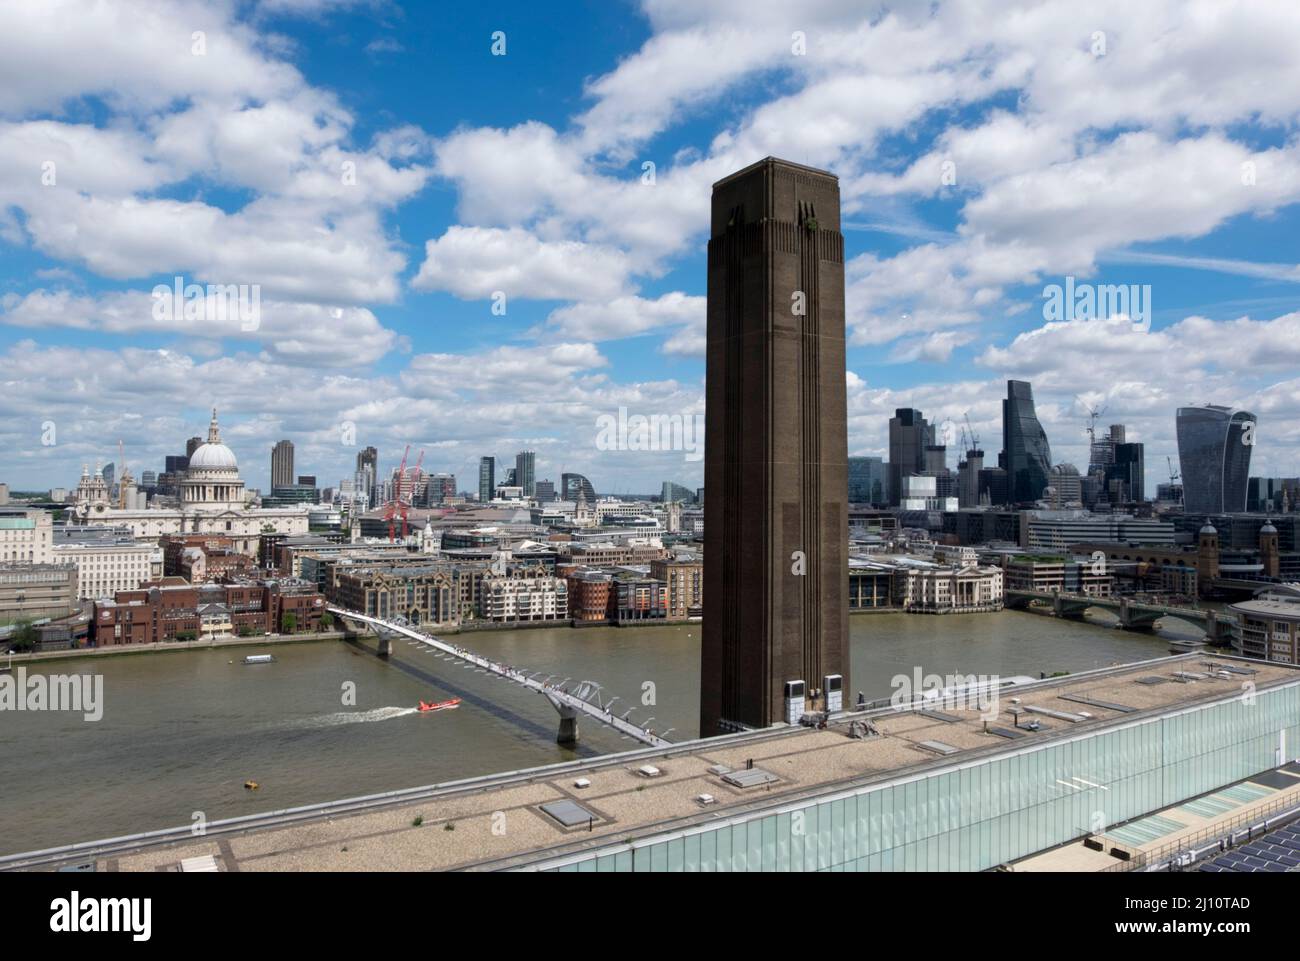 Blick vom Erweiterungsbau der Tate Modern auf den alten Kraftwerksturm und die City Foto Stock